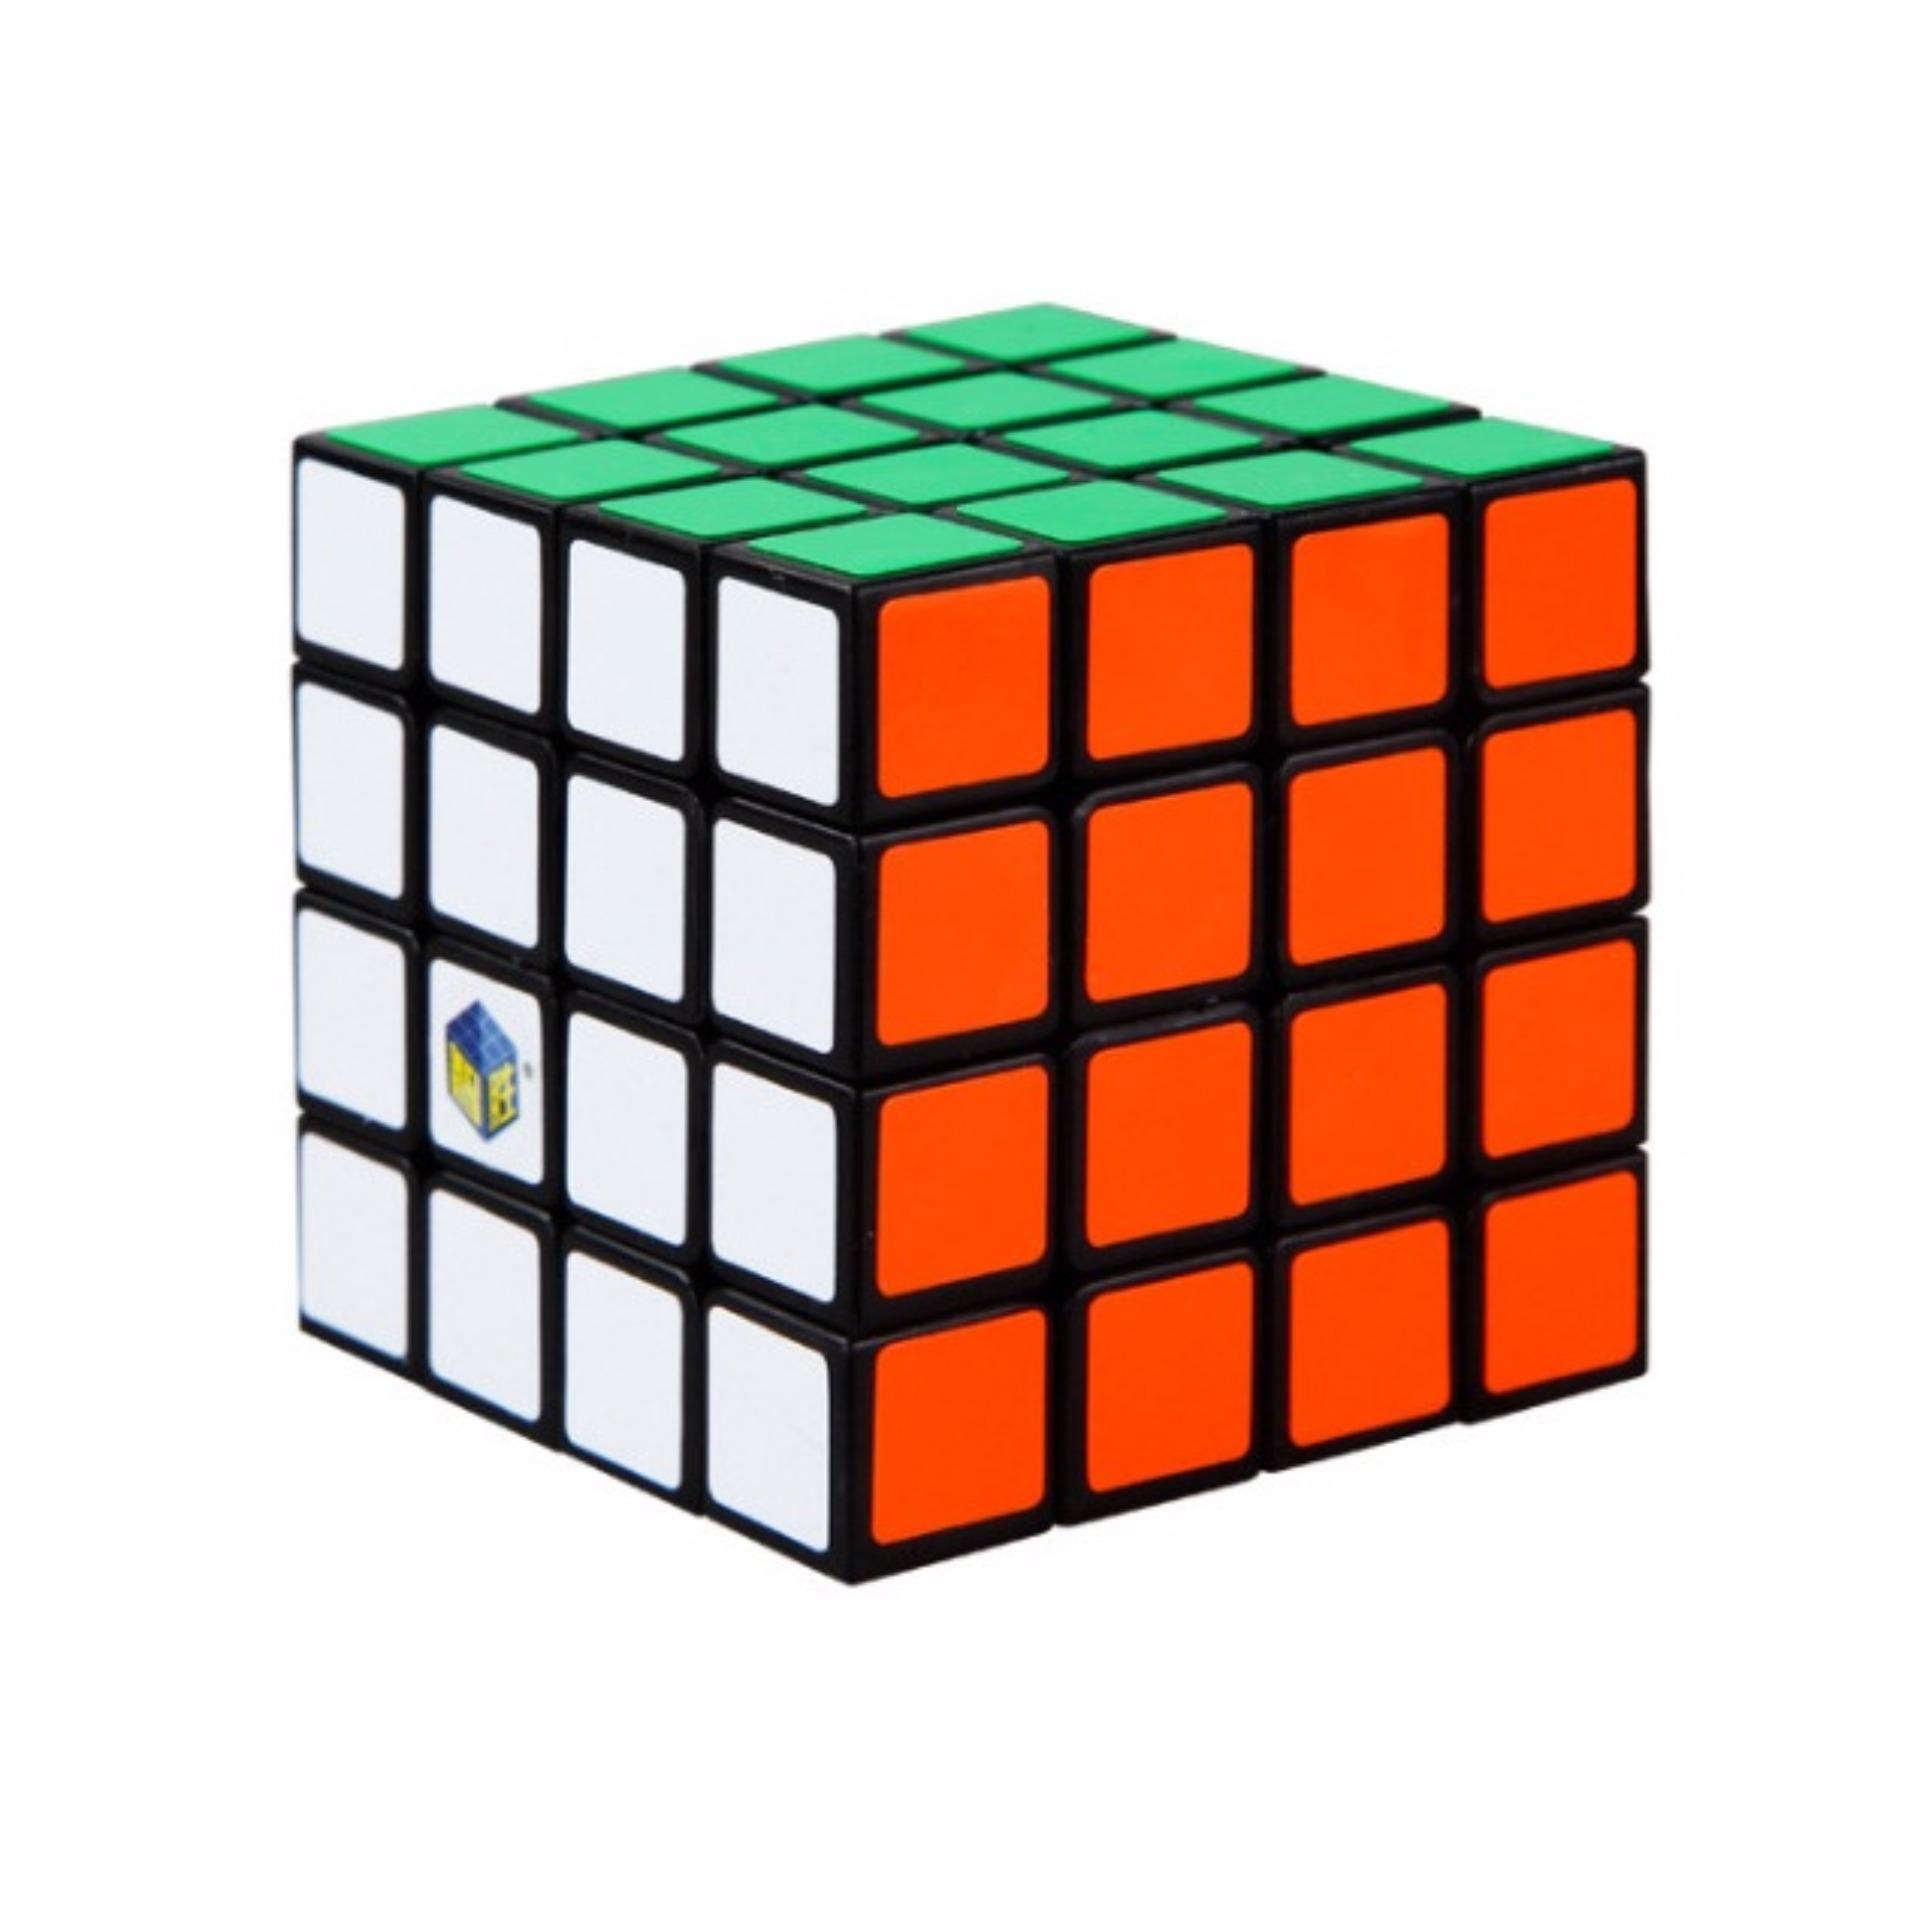 Rẻ nhất Thị Trường Rubik 4x4 QiYi khối rubik 4 tầng ma thuật cực đẹp  Giá  Tiki khuyến mãi 45800đ  Mua ngay  Tư vấn mua sắm  tiêu dùng trực  tuyến Bigomart